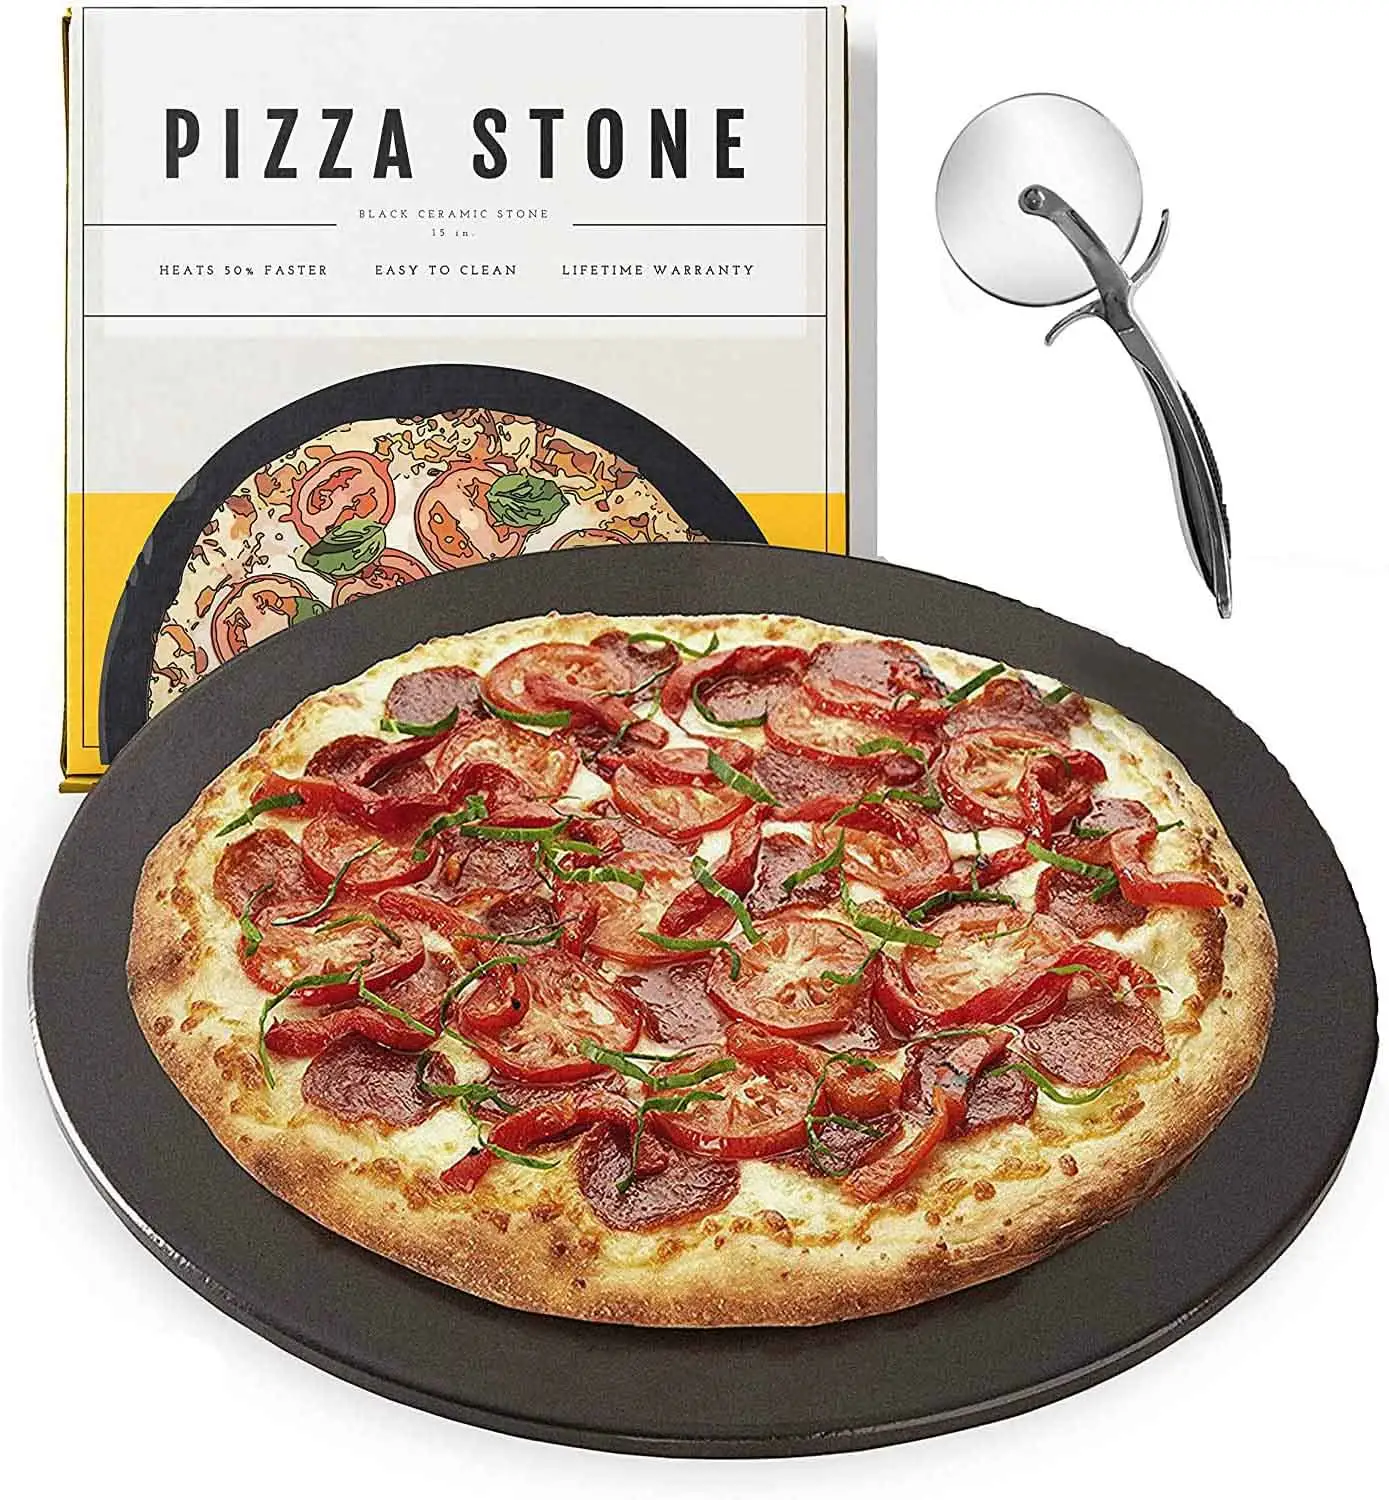 الجملة الأسود جولة البسيطة الرخام السيراميك قردرت صهر شواء البيتزا فرن خبز الحجر قاعدة مجموعة للبيتزا